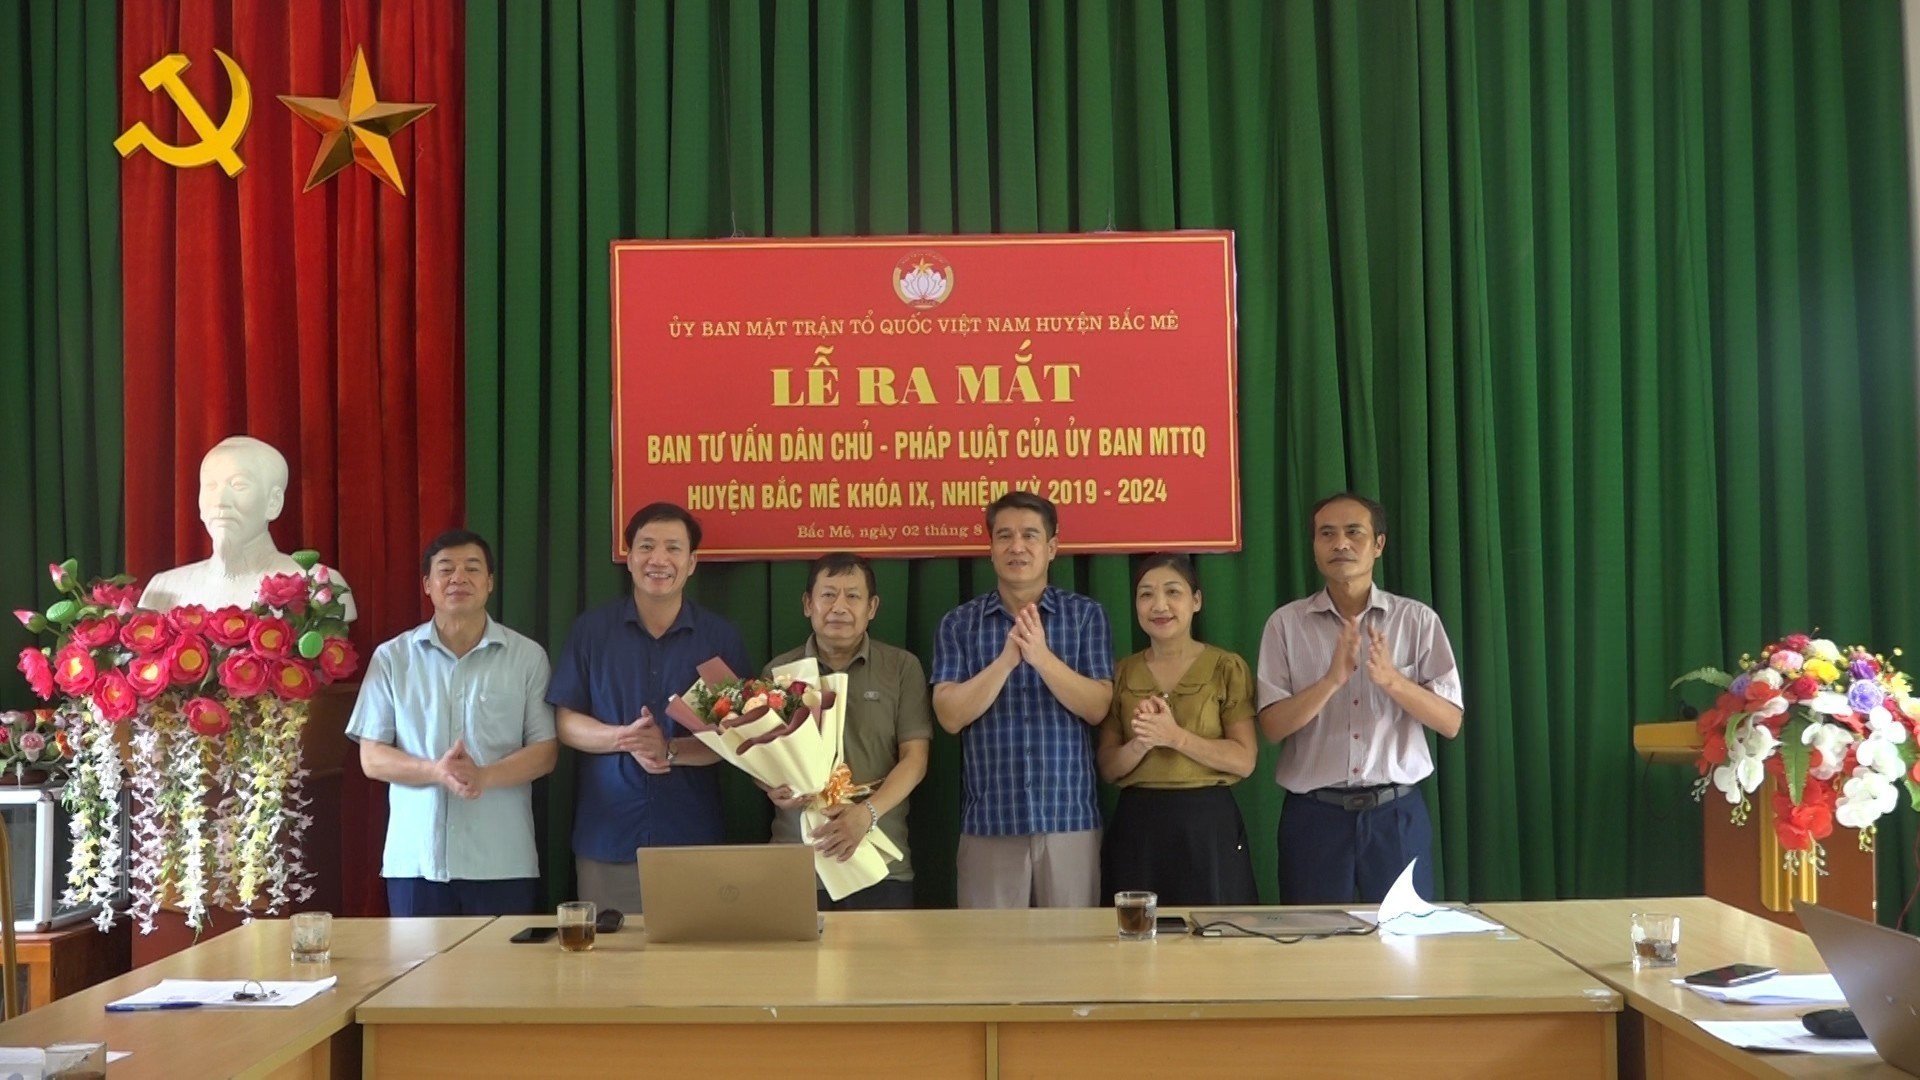 Công bố Quyết định thành lập Ban tư vấn Dân chủ - Pháp luật của Ủy ban MTTQ Việt Nam huyện Bắc Mê